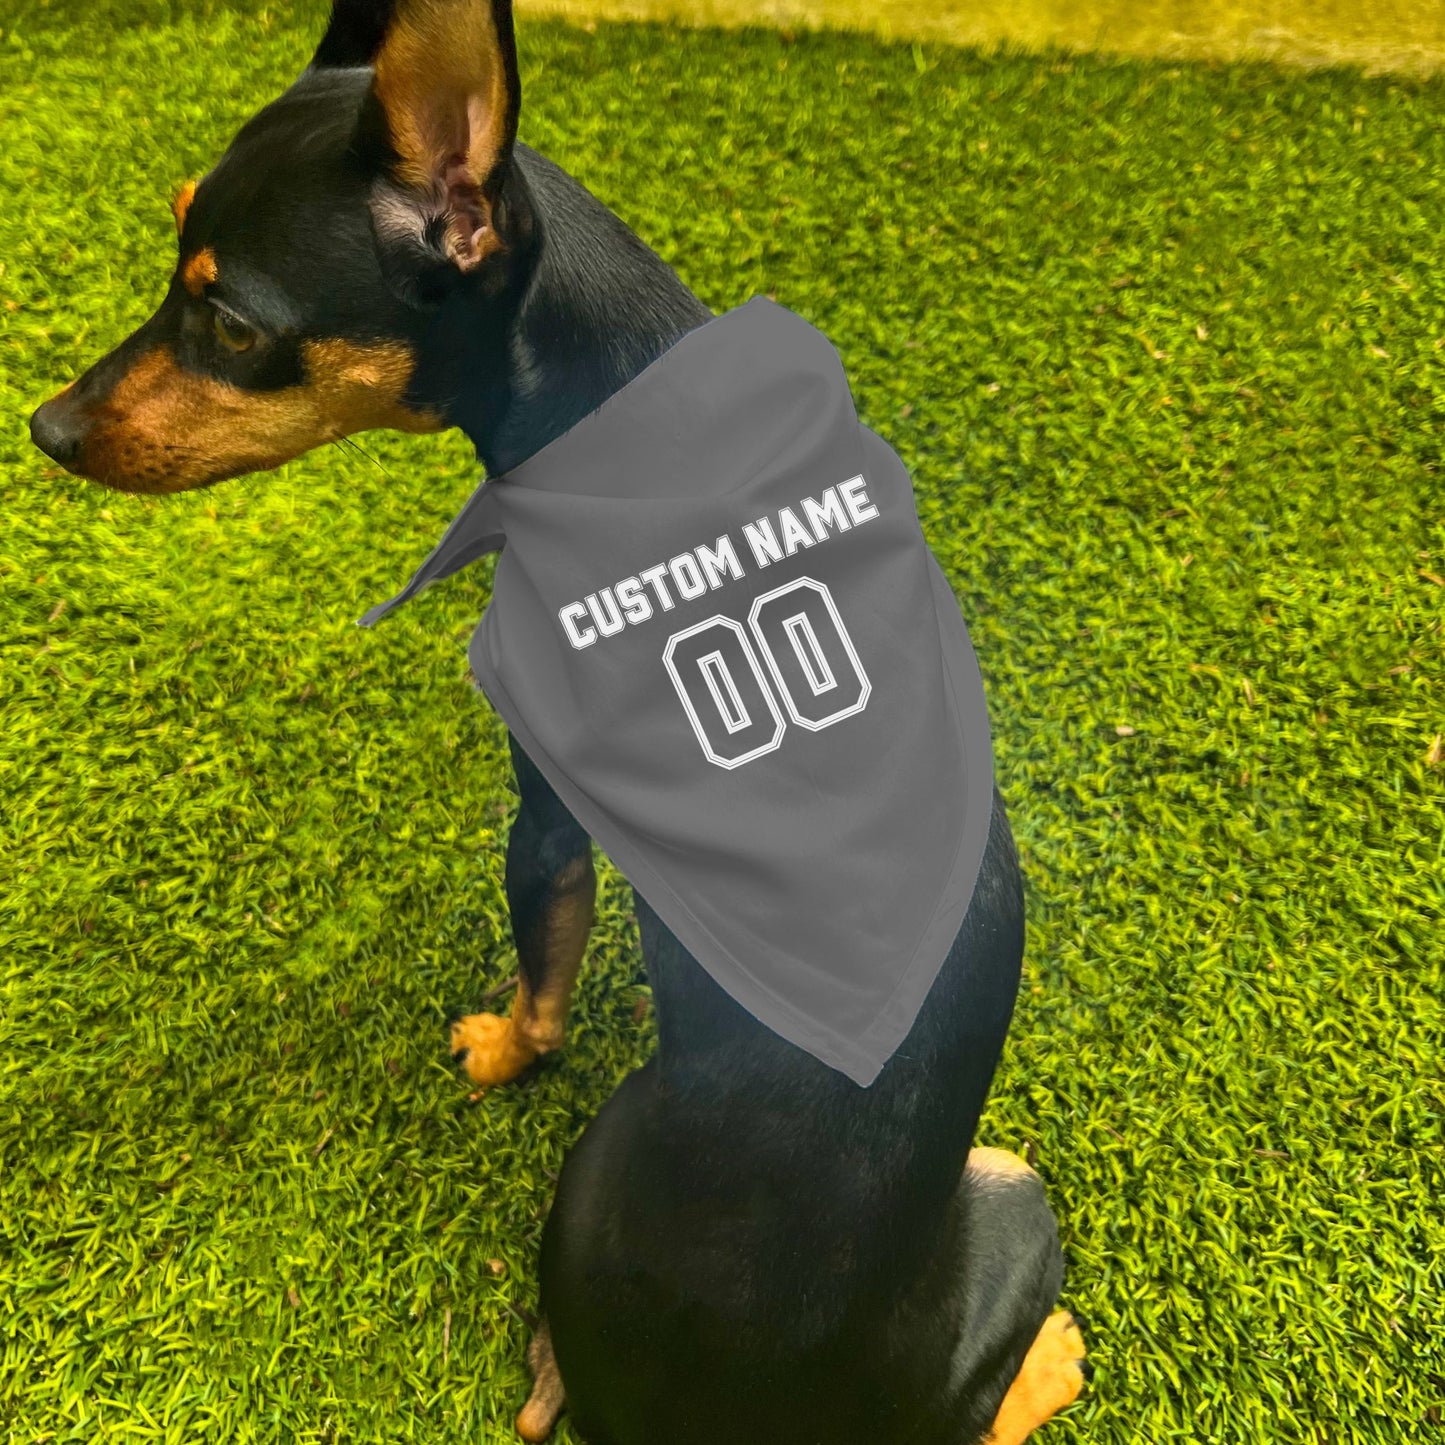 "Team Jersey 00" Custom Dog Bandana